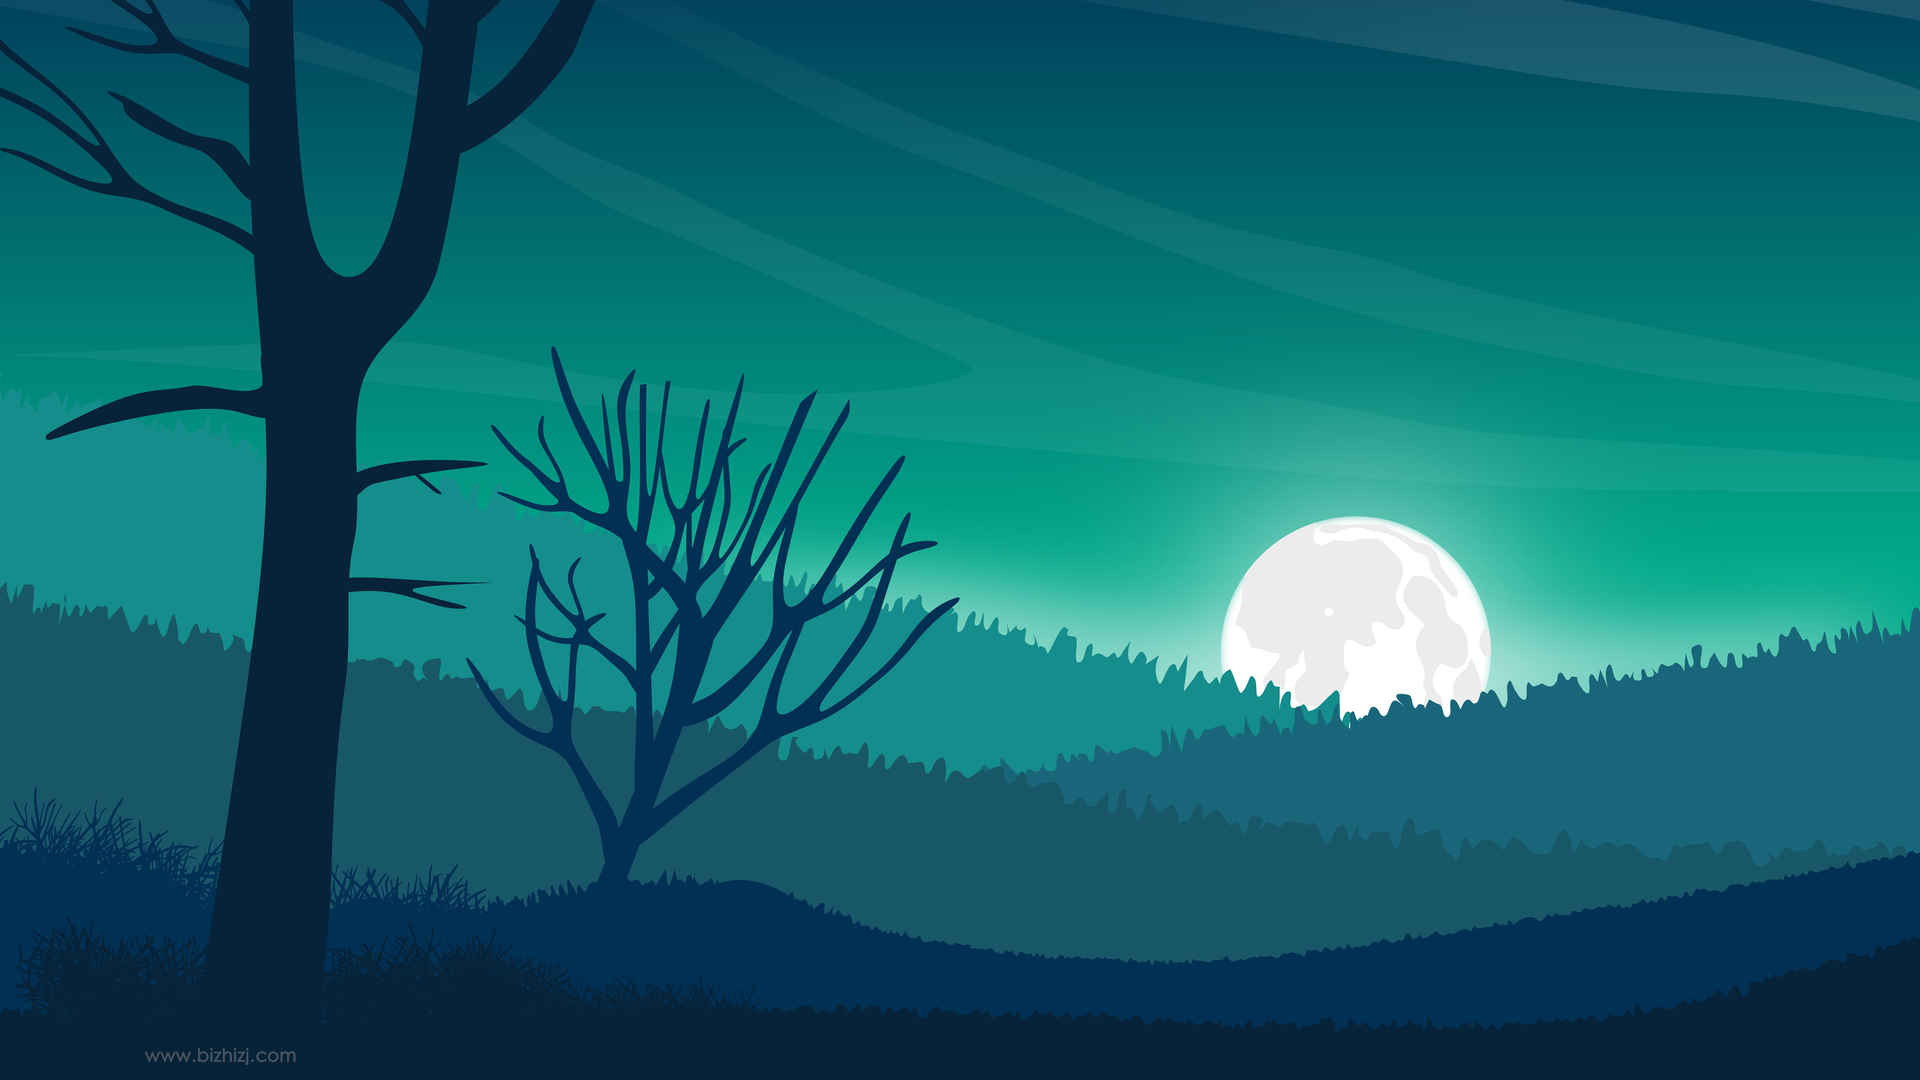 夜晚 树木 森林 月亮 风景插画壁纸-